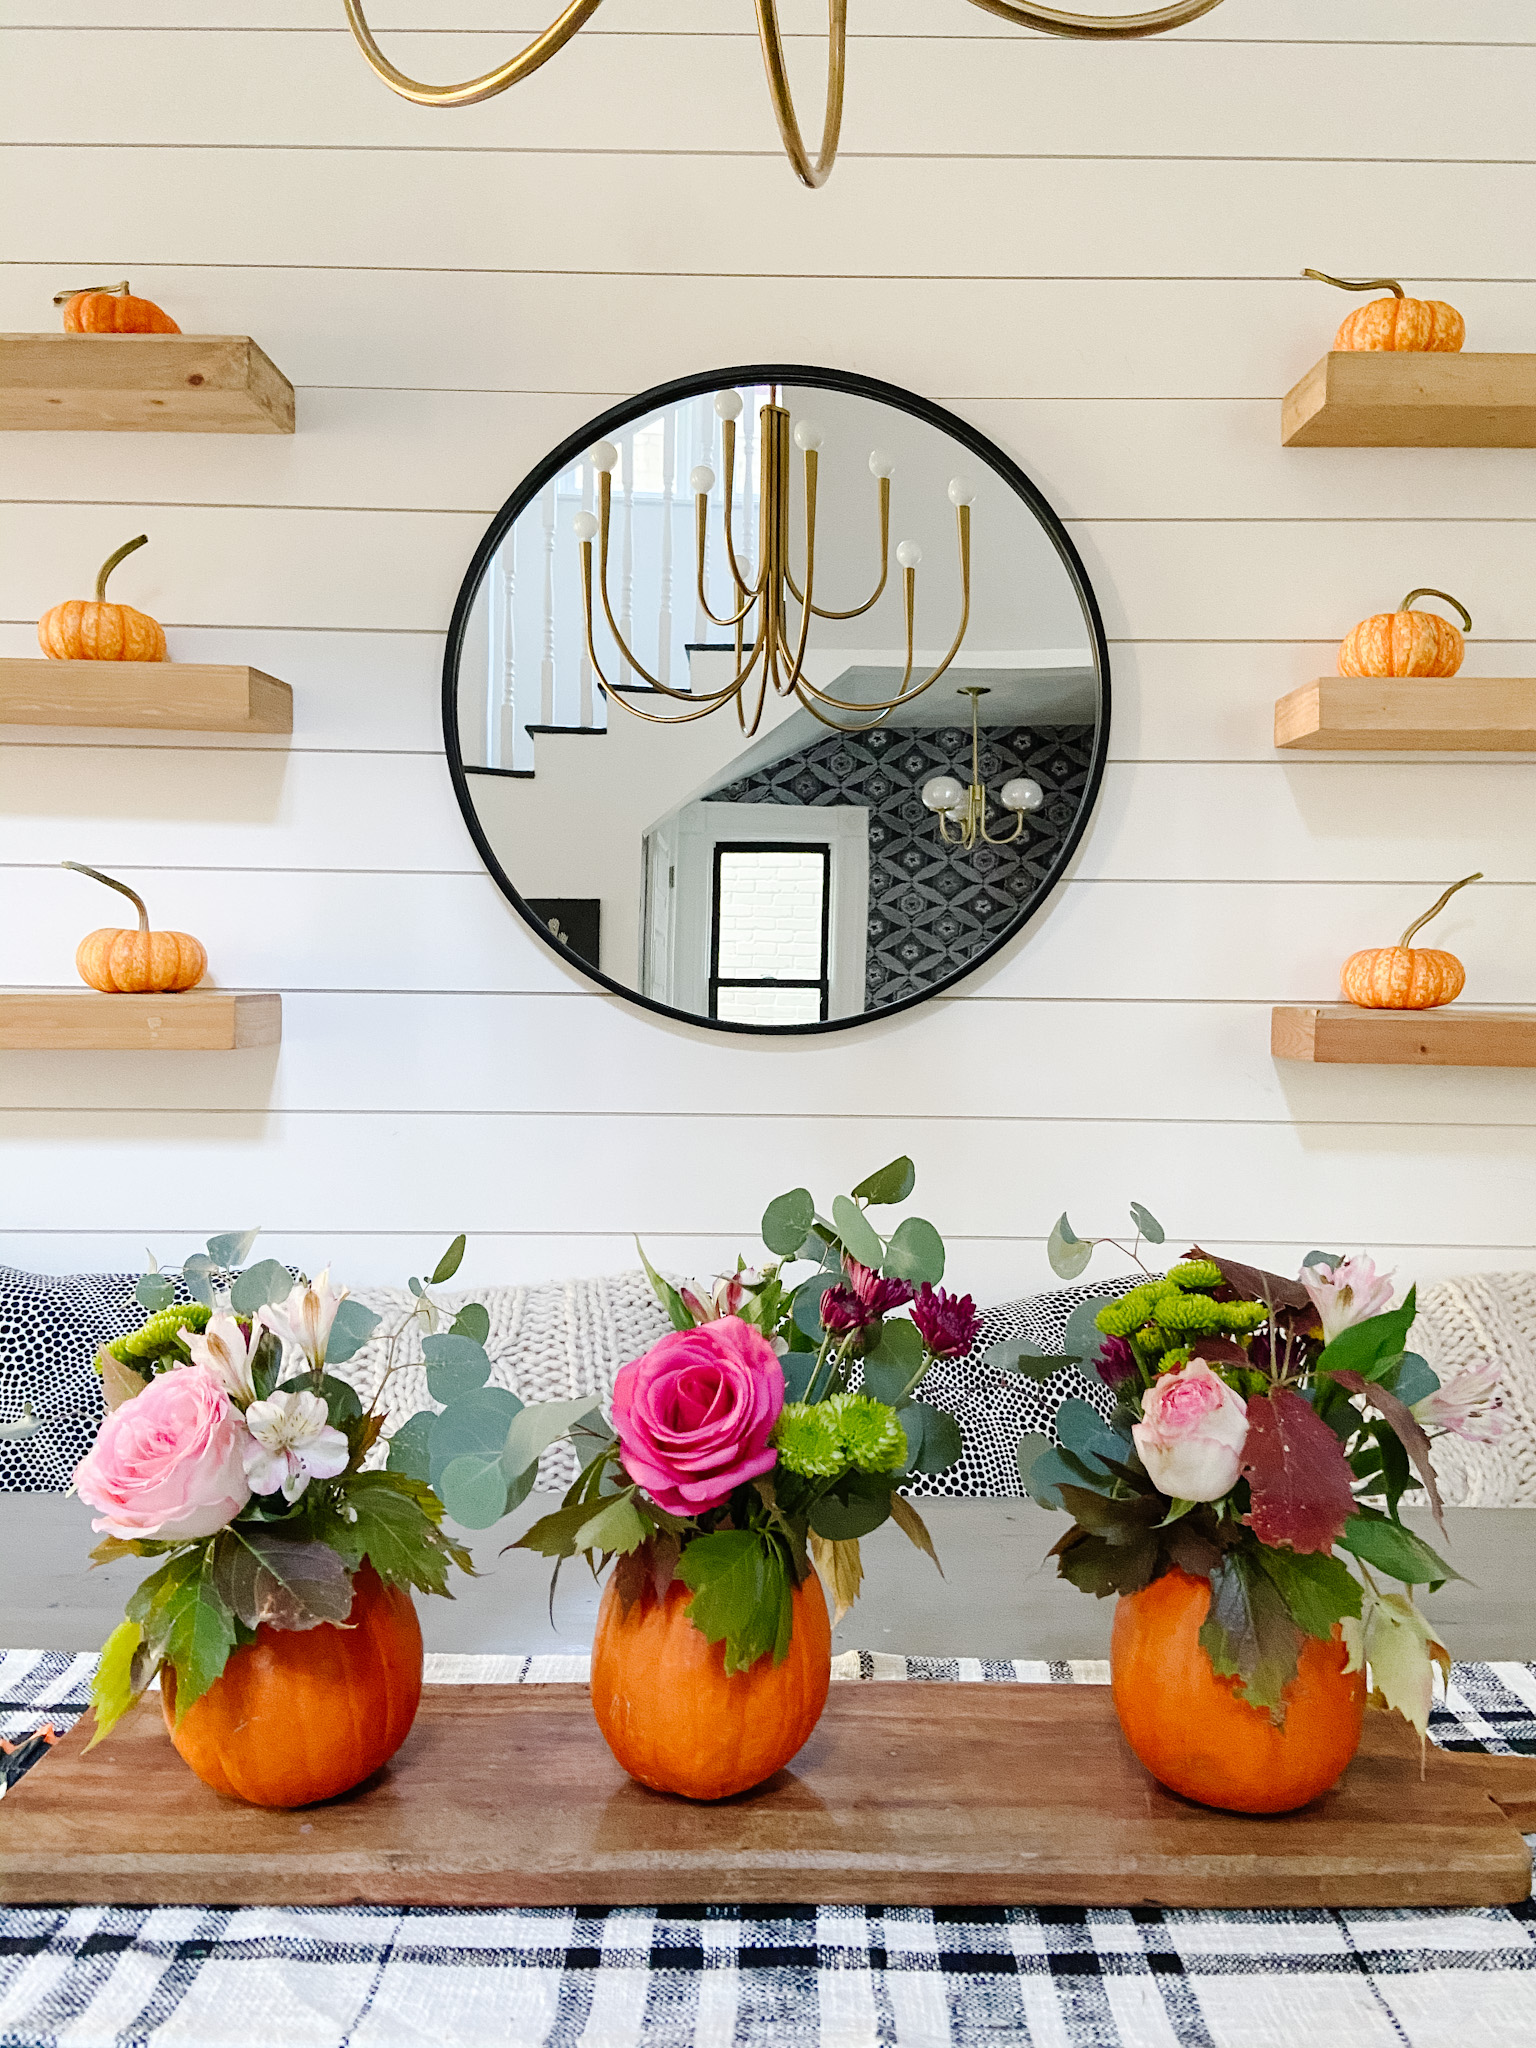 Mini Pumpkin Flower Arrangement Centerpieces. Care small pumpkins and display cut flowers for an festive fall centerpiece.